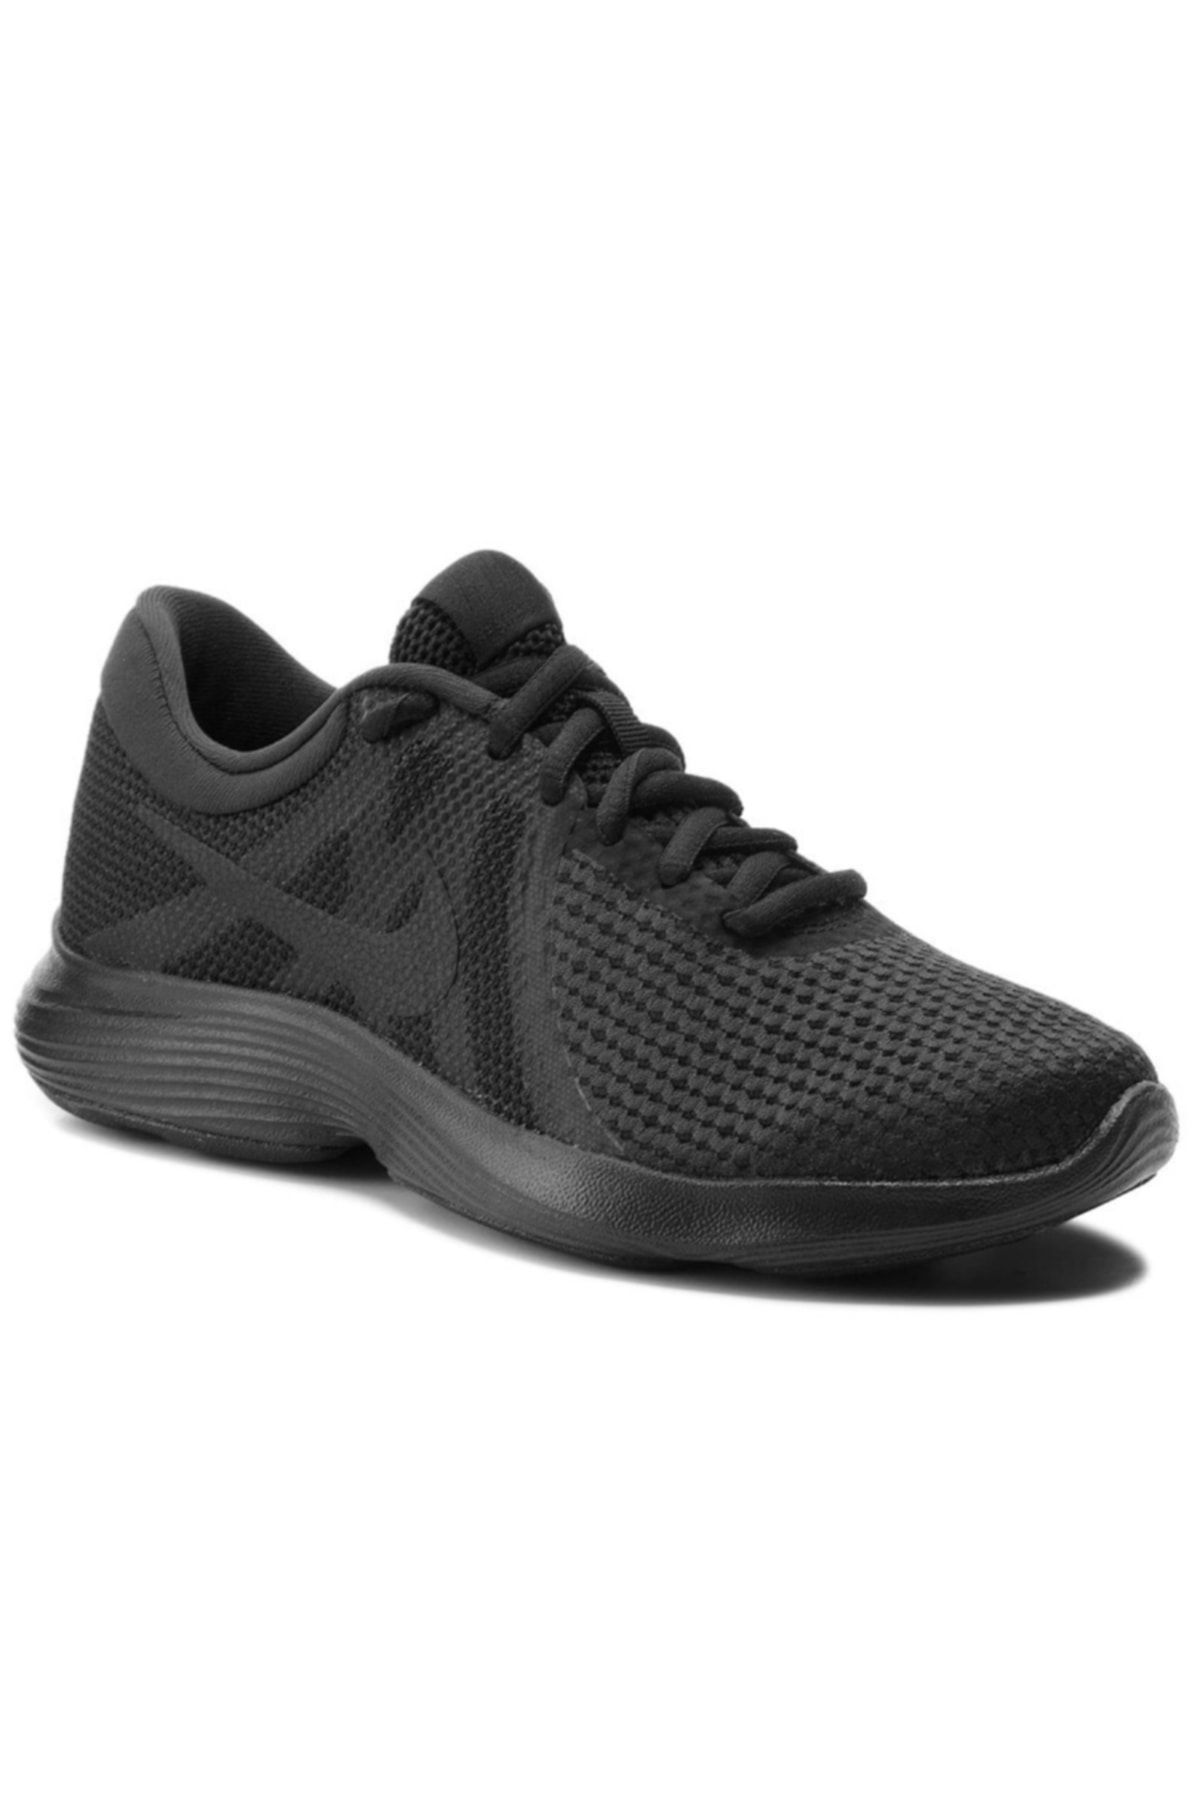 Nike Kadın Koşu & Antrenman Ayakkabısı -  Revolution 4 - AJ3491-002